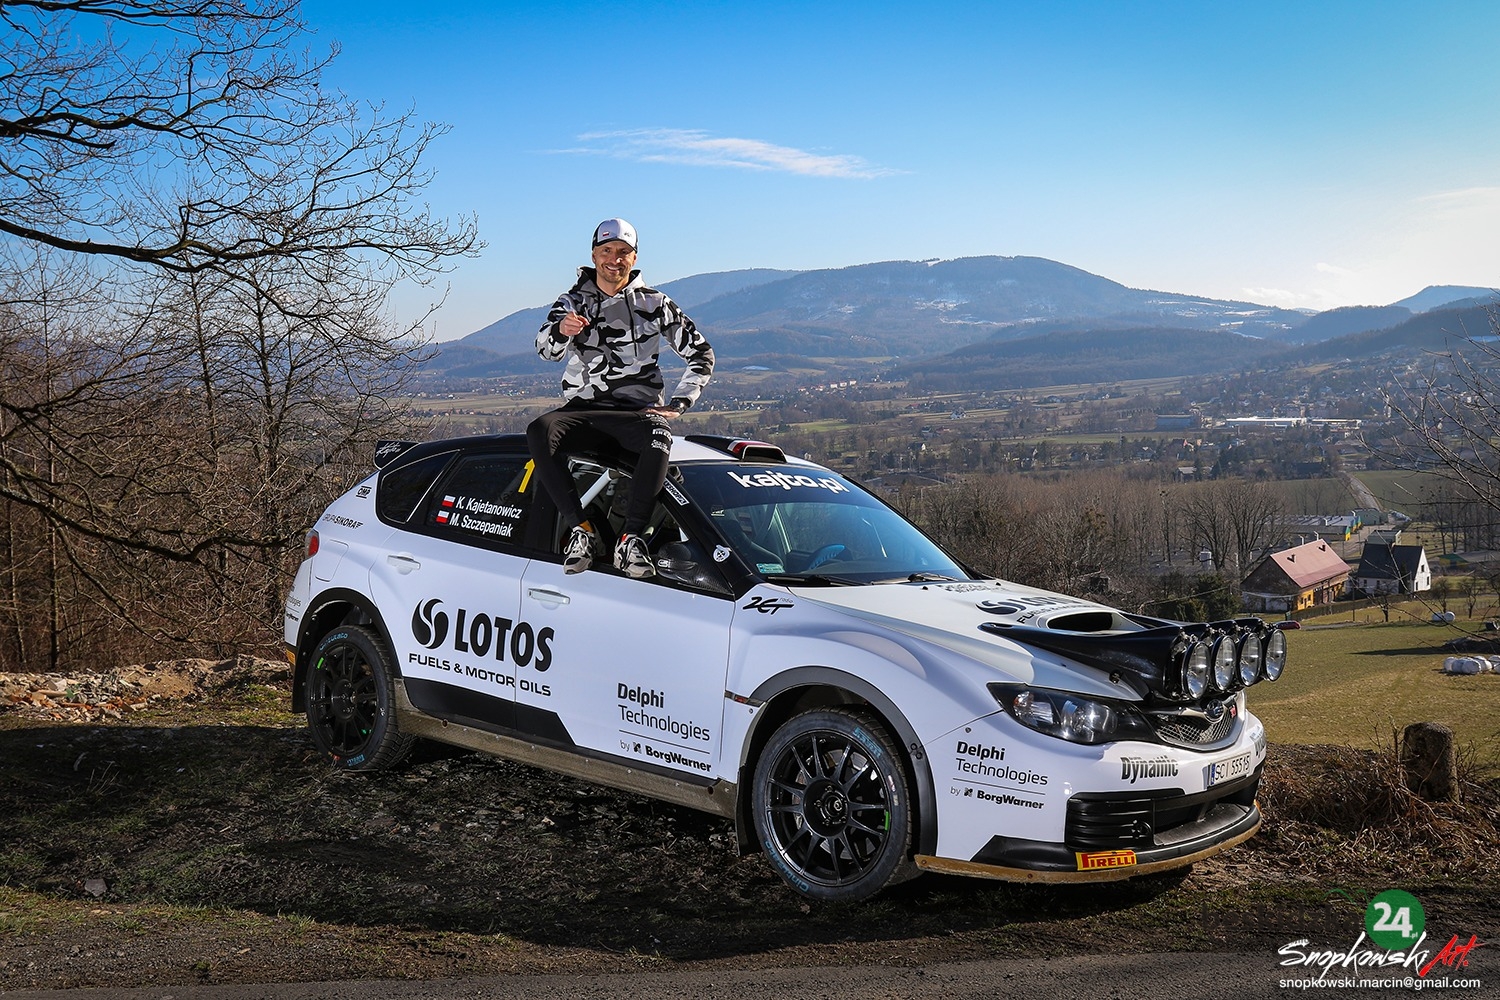 Kajto en el Campeonato Mundial de Rally.  Entrenamiento croata frente a él